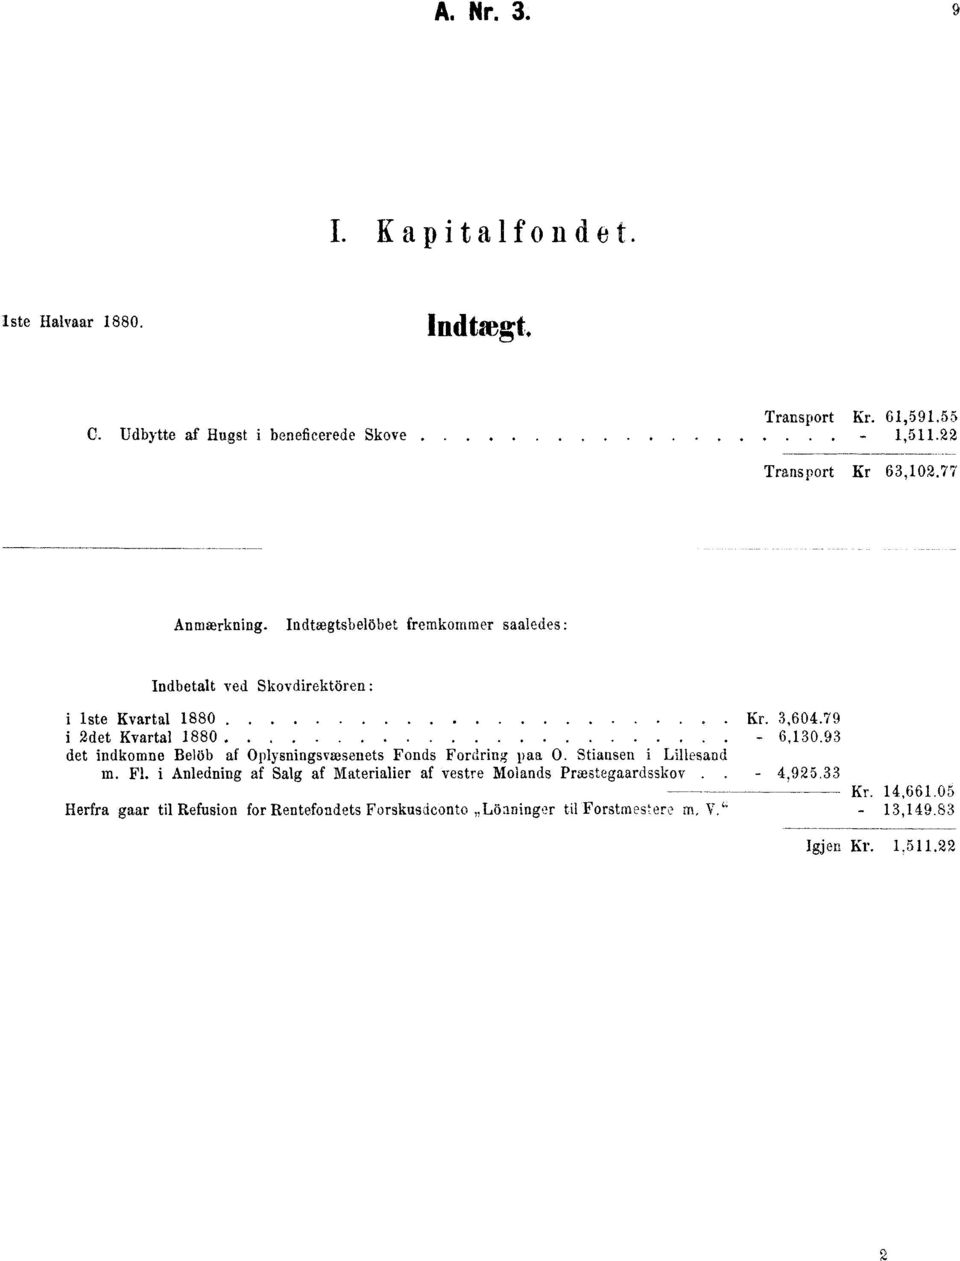 79 2det Kvartal 1880. - 6,130.93 det indkomne Bel6b af Oplysningsvæsenets Fonds Fordring paa O. Stiansen i Lillesand m. Fl.